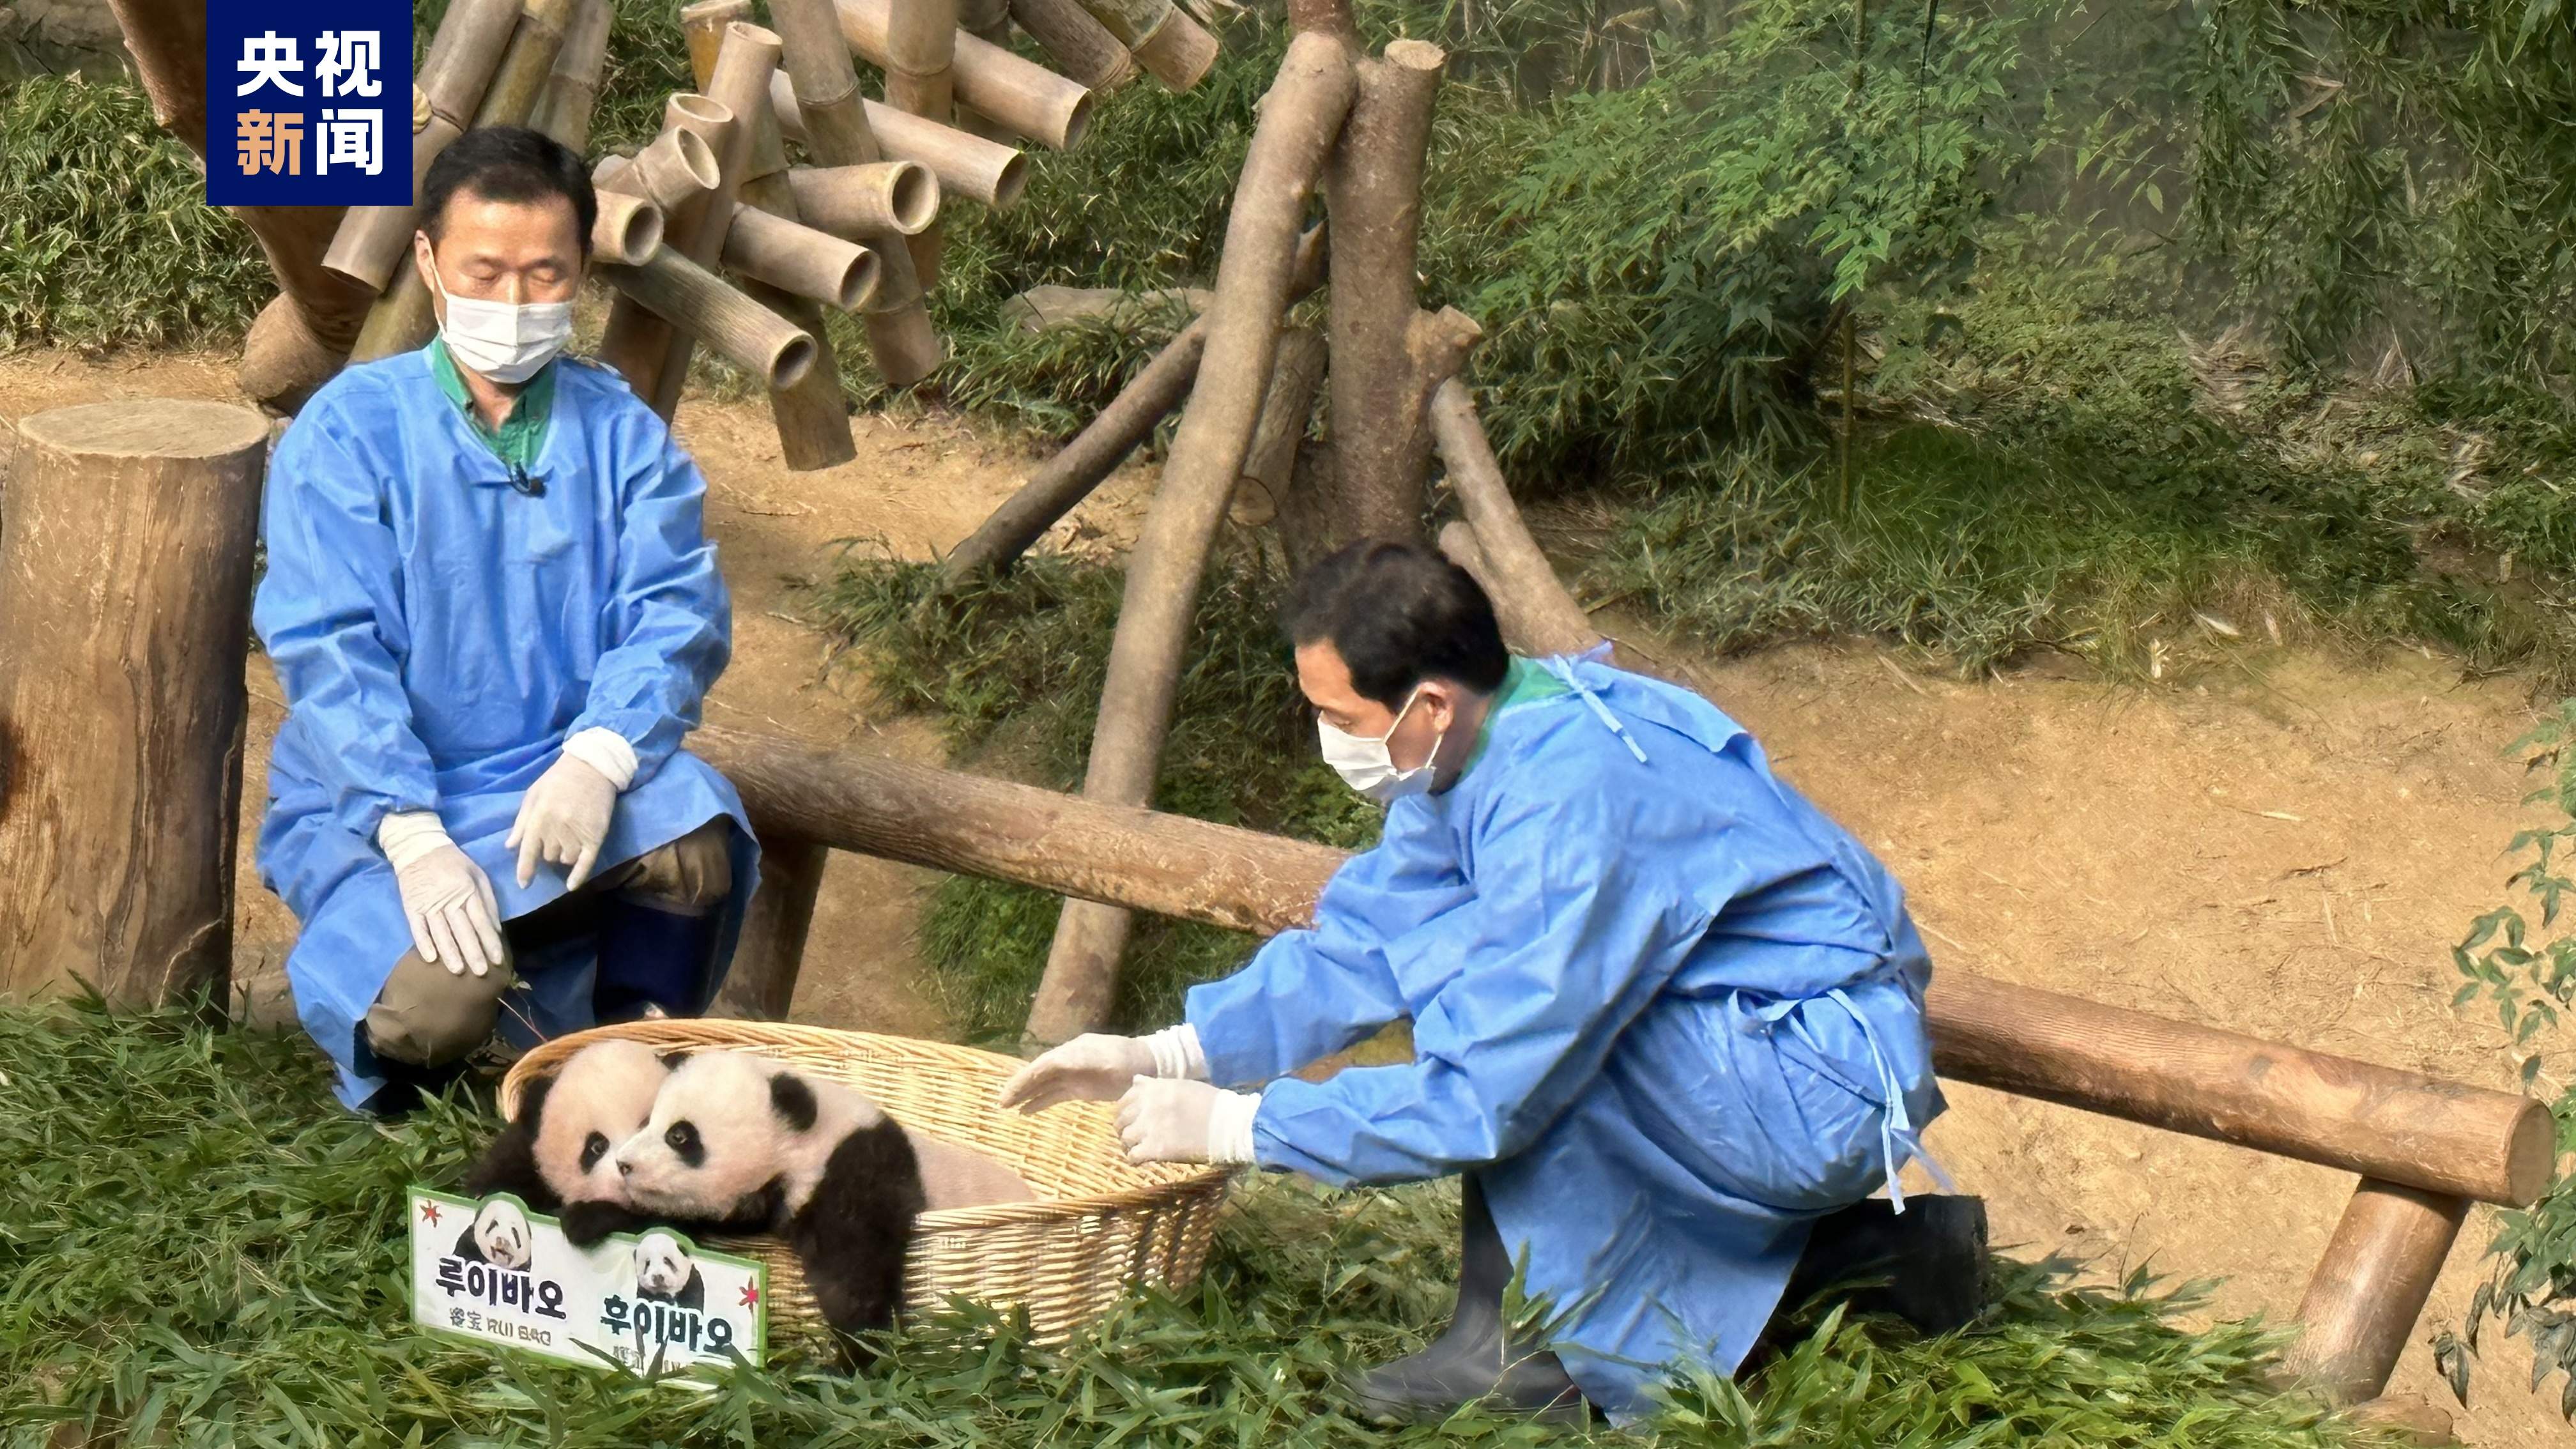 最终命名揭晓 旅韩大熊猫双胞胎宝宝有名字啦